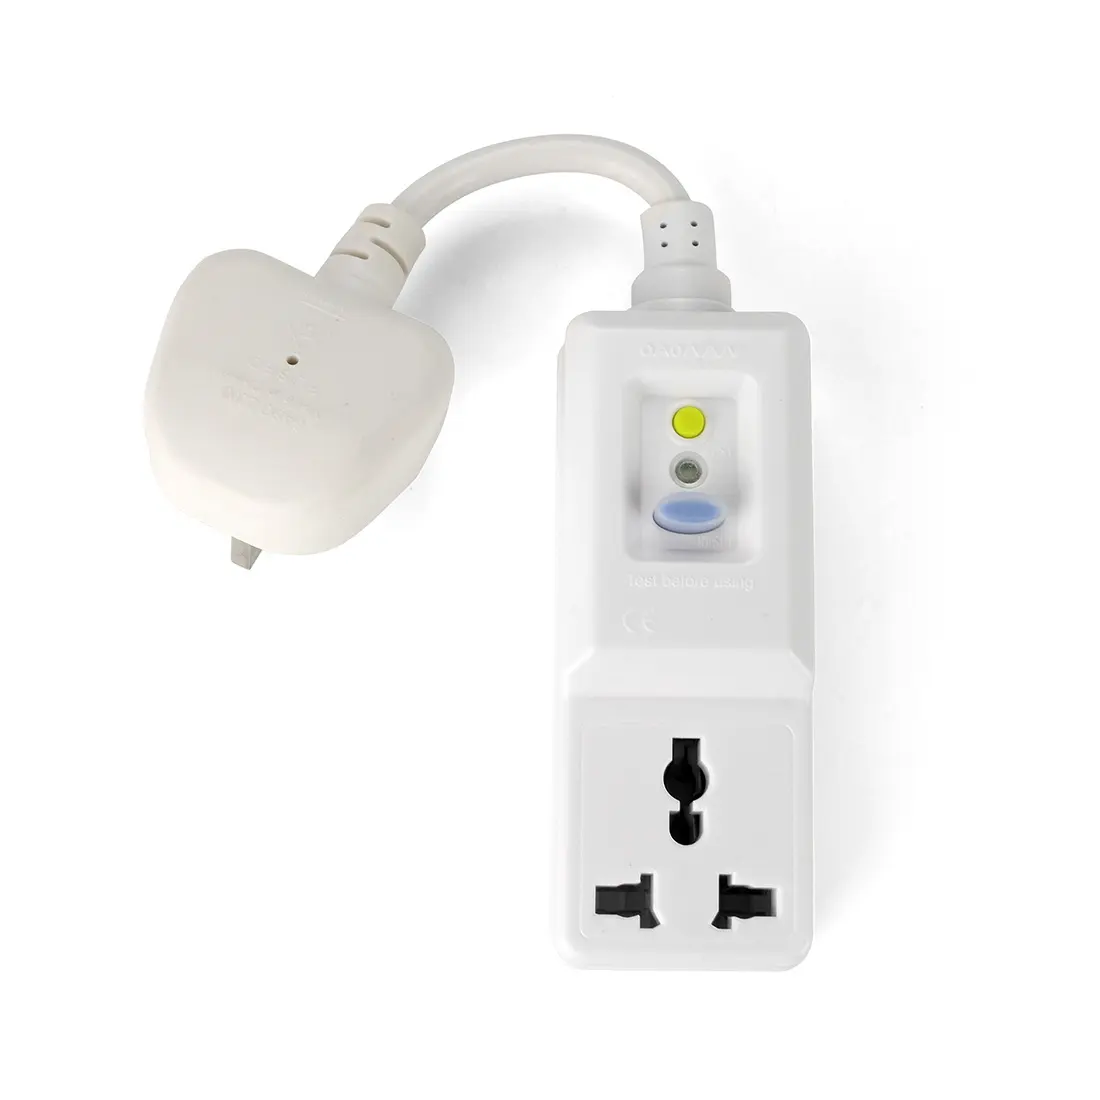 UK standard Plug Adapter Power Converter tourism conversion plug UK Travel Plug Outlet Adaptor UK Socket